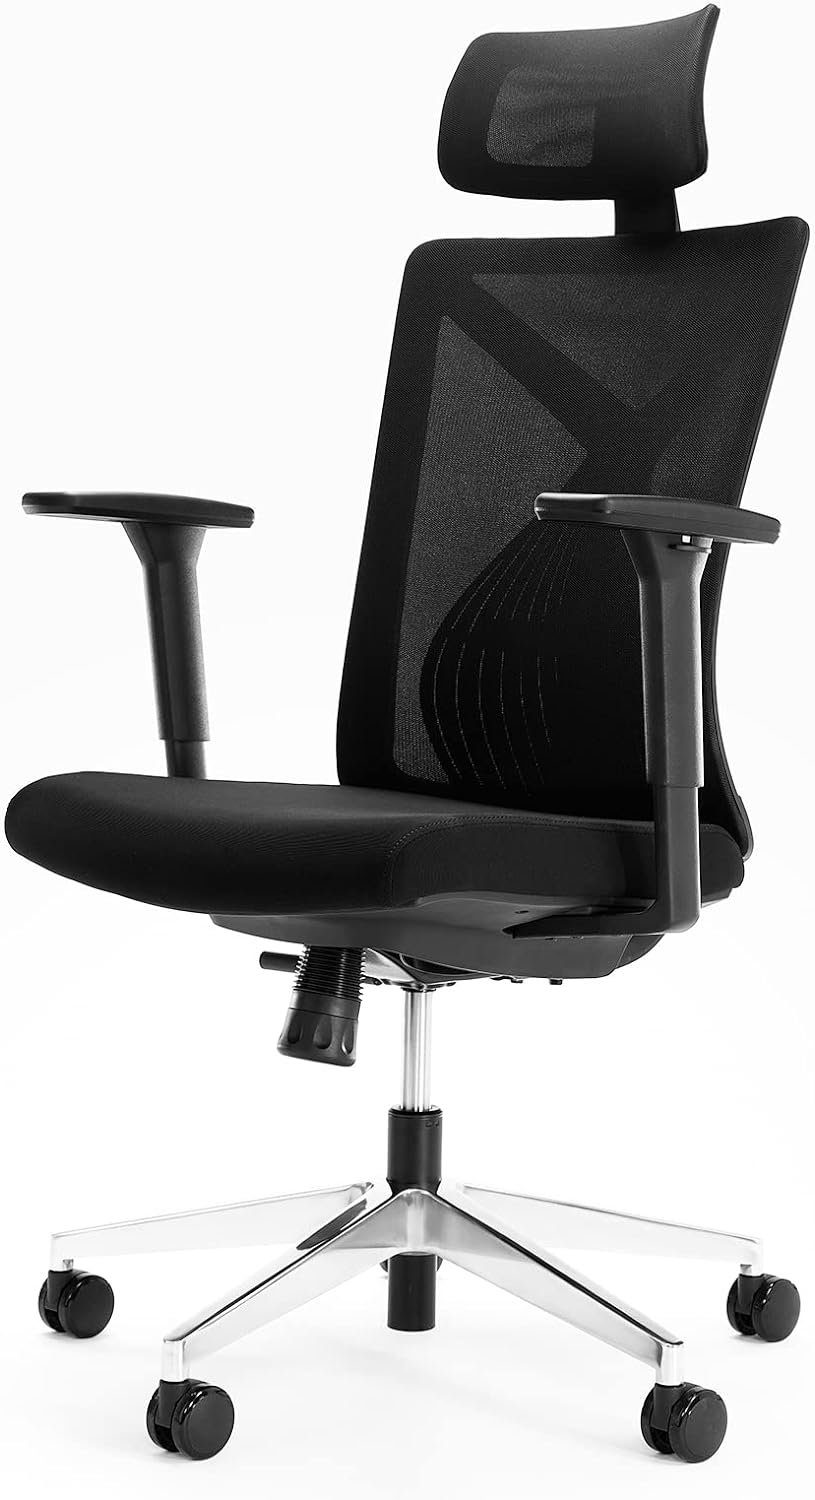 Novilla Bürostuhl, Ergonomisch Schreibtischstuhl, Hoher Rücken Stuhl mit Verstellbarer